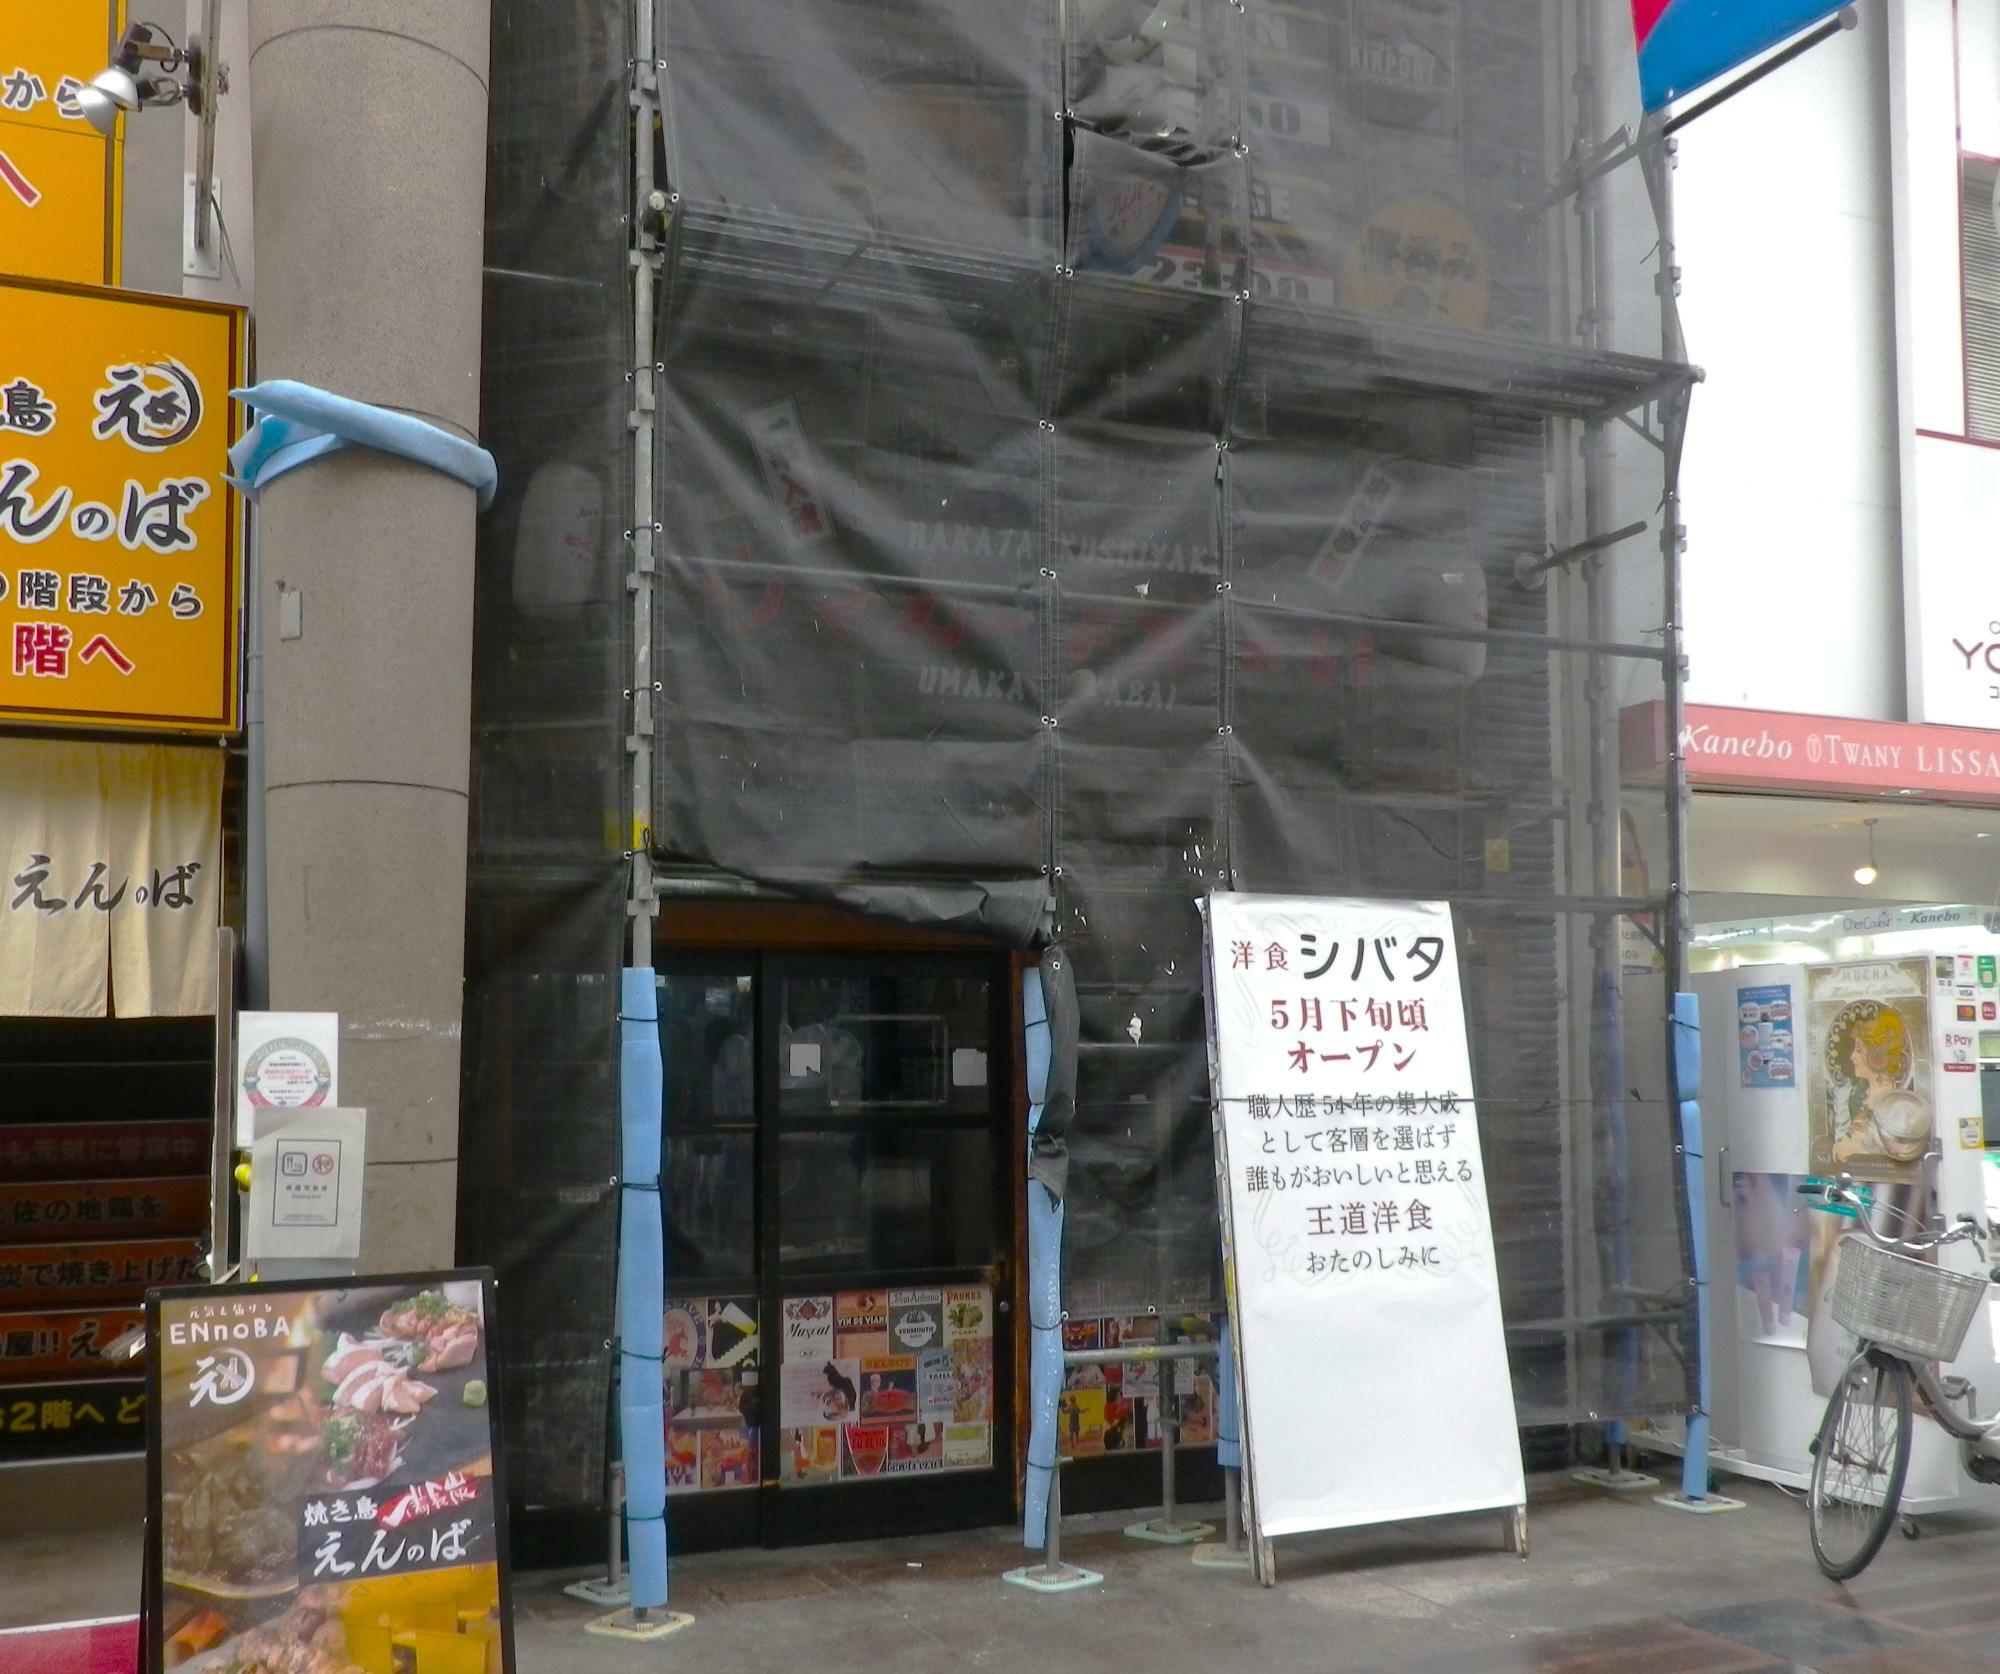 2024年3月31日(日)閉店の大衆居酒屋「博多串焼卸ウマカーよかばい」の跡地。